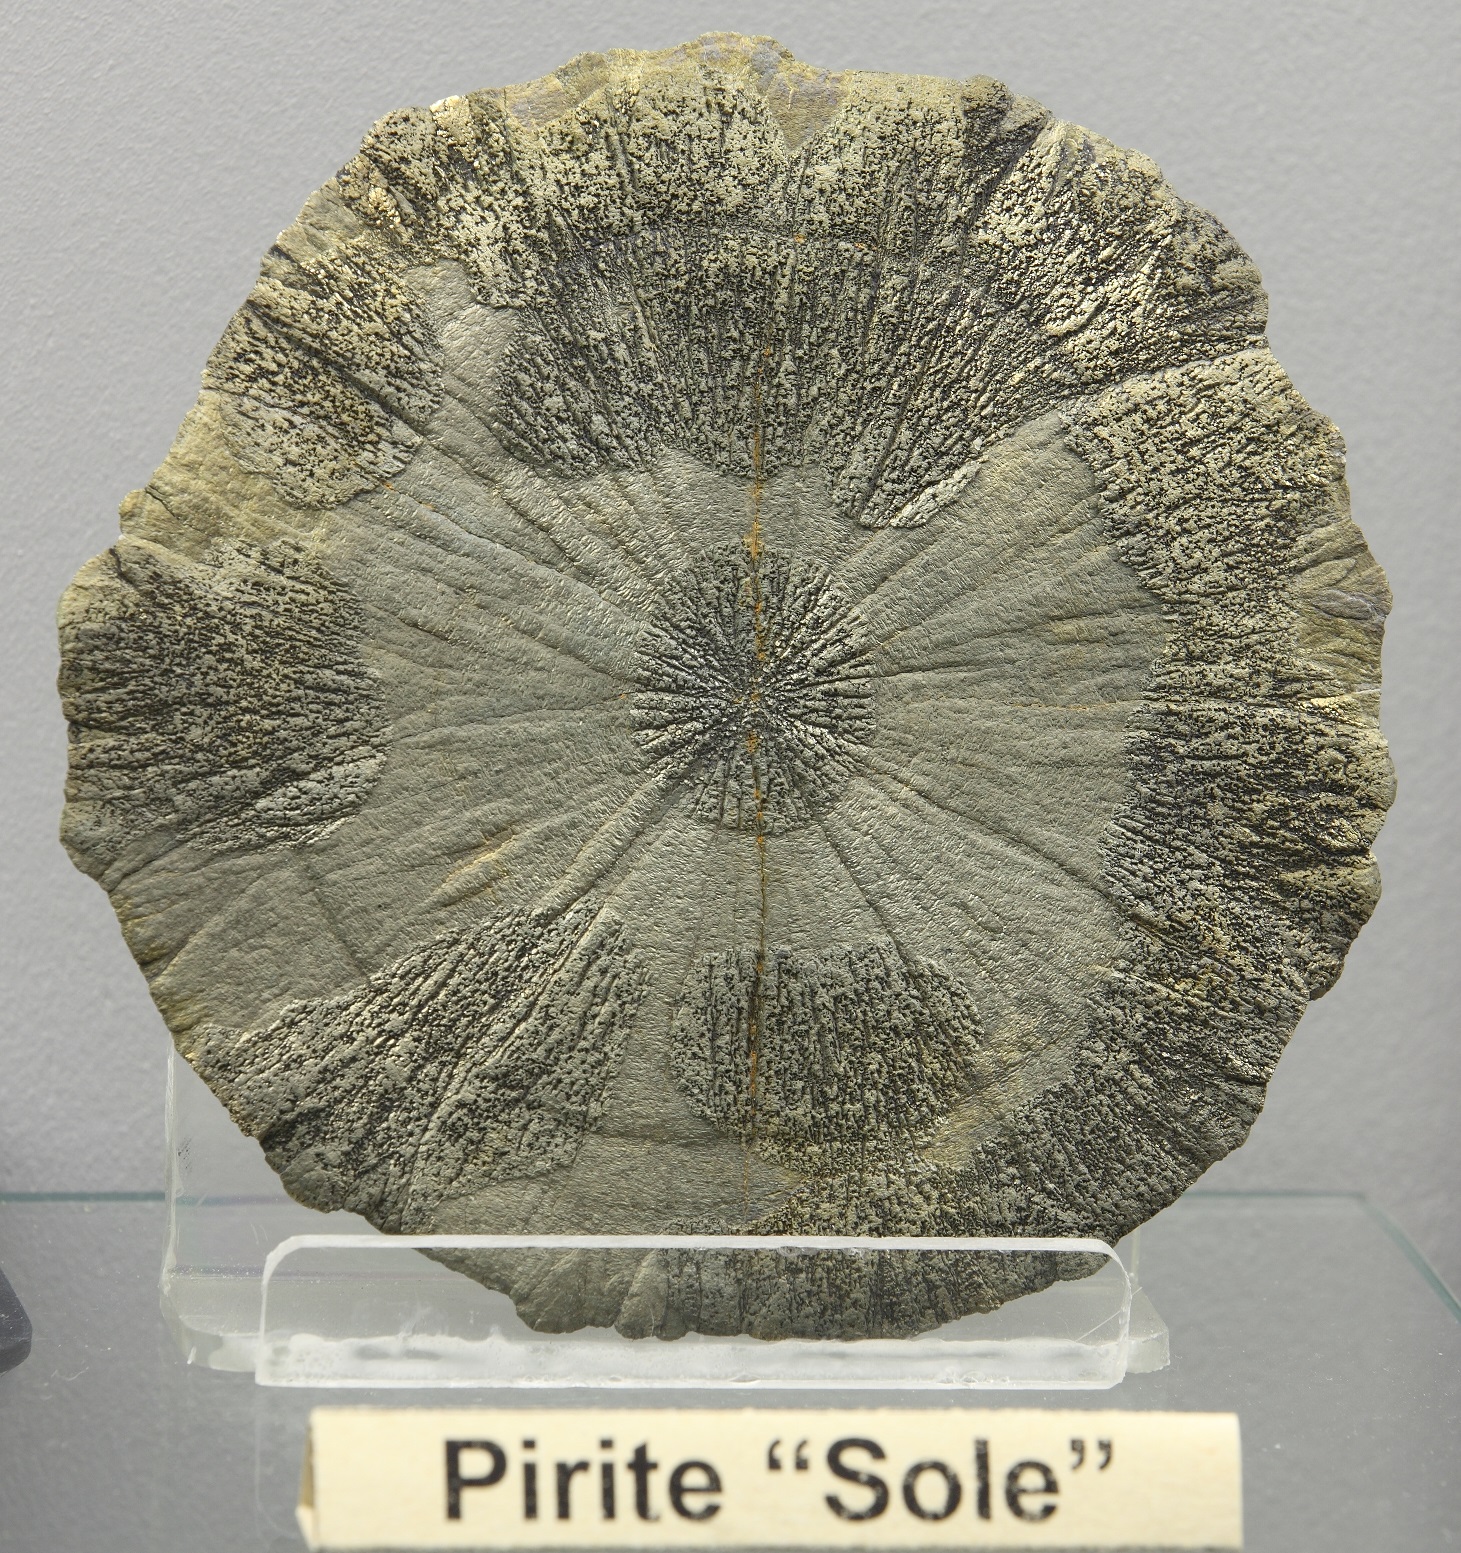 Pirite sole: cristallo di pirite con la forma di un disco.